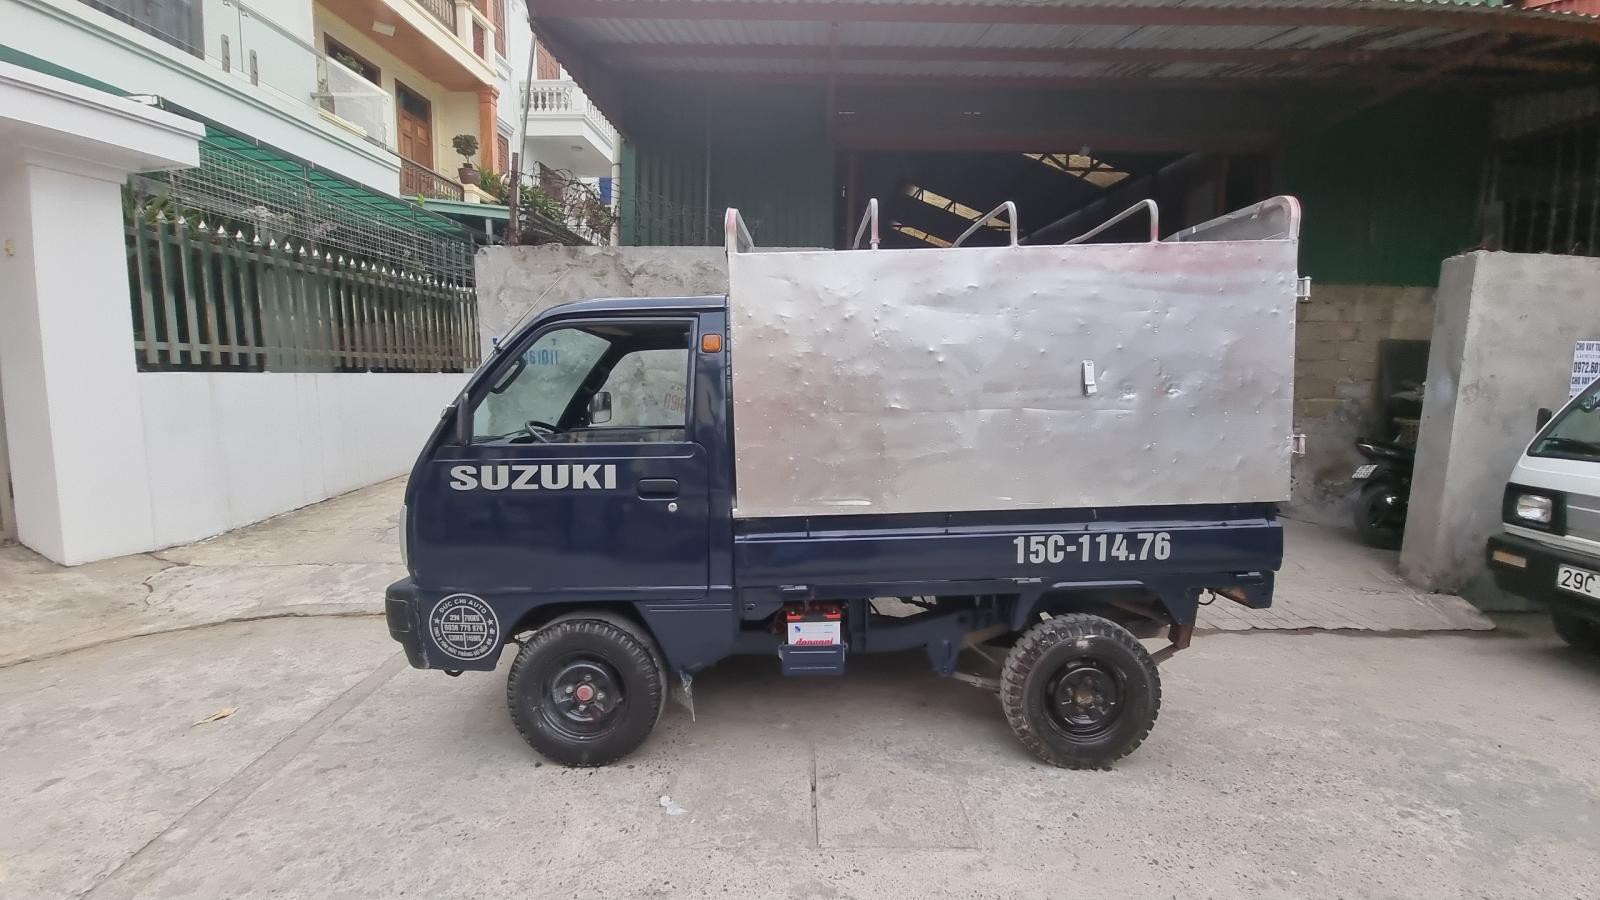 Bán Suzuki 5 tạ cũ thùng bạt màu xanh đời 2014 tại Hải Phòng lh 090.605.3322